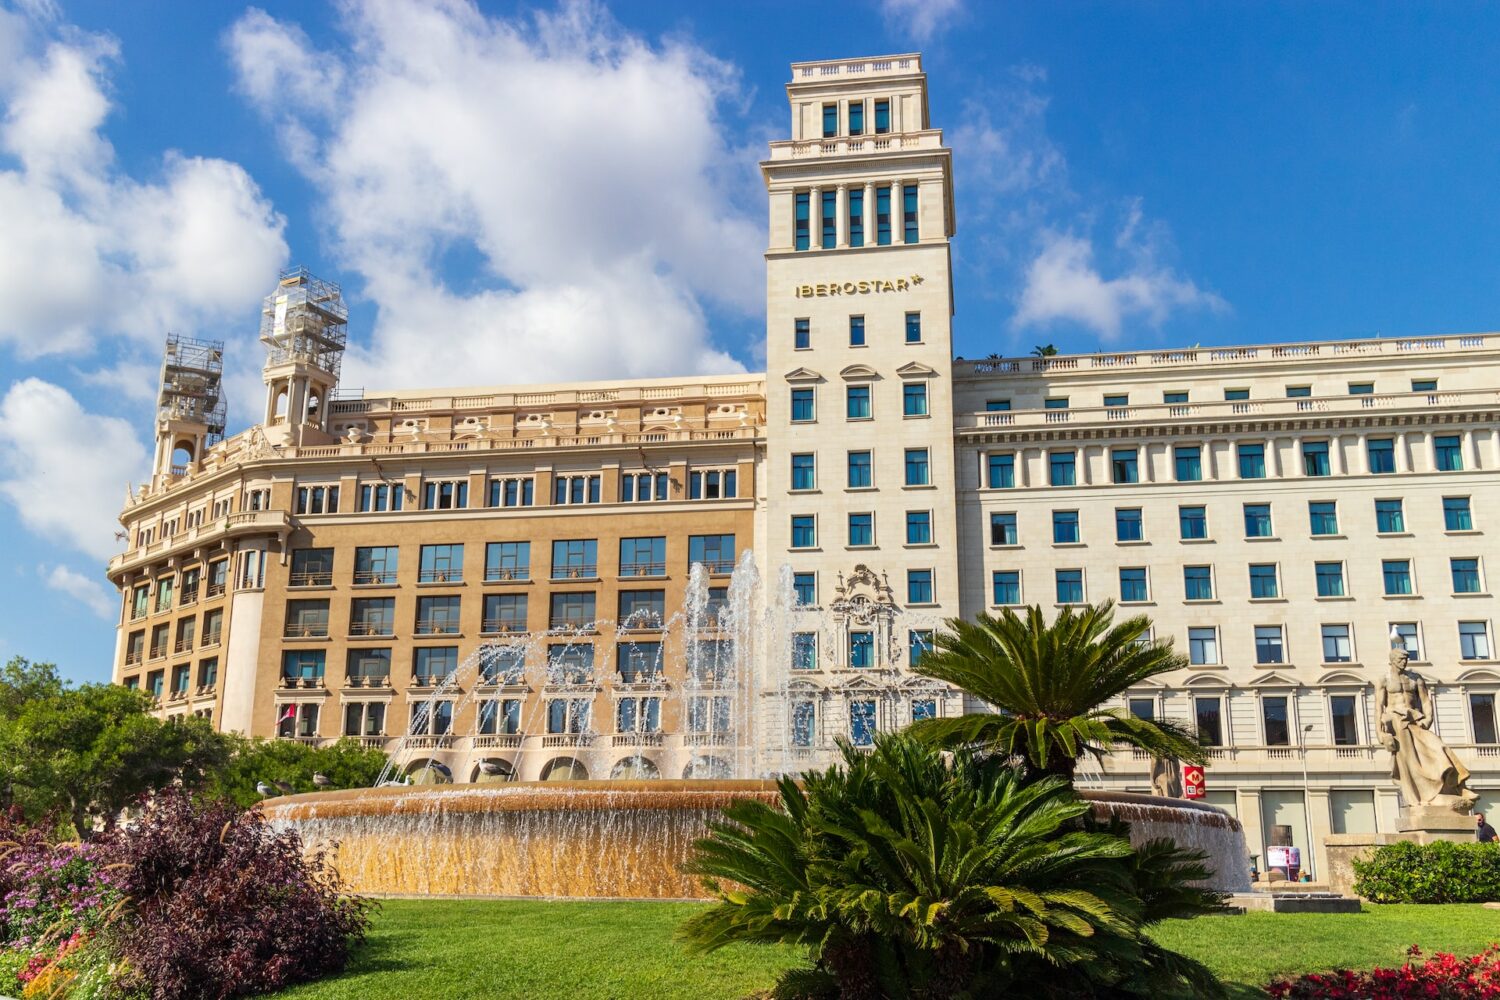 Fachada do hotel Iberostar, uma das recomendações de onde ficar em Barcelona. Há uma fonte na frente do hotel, e algumas plantas.